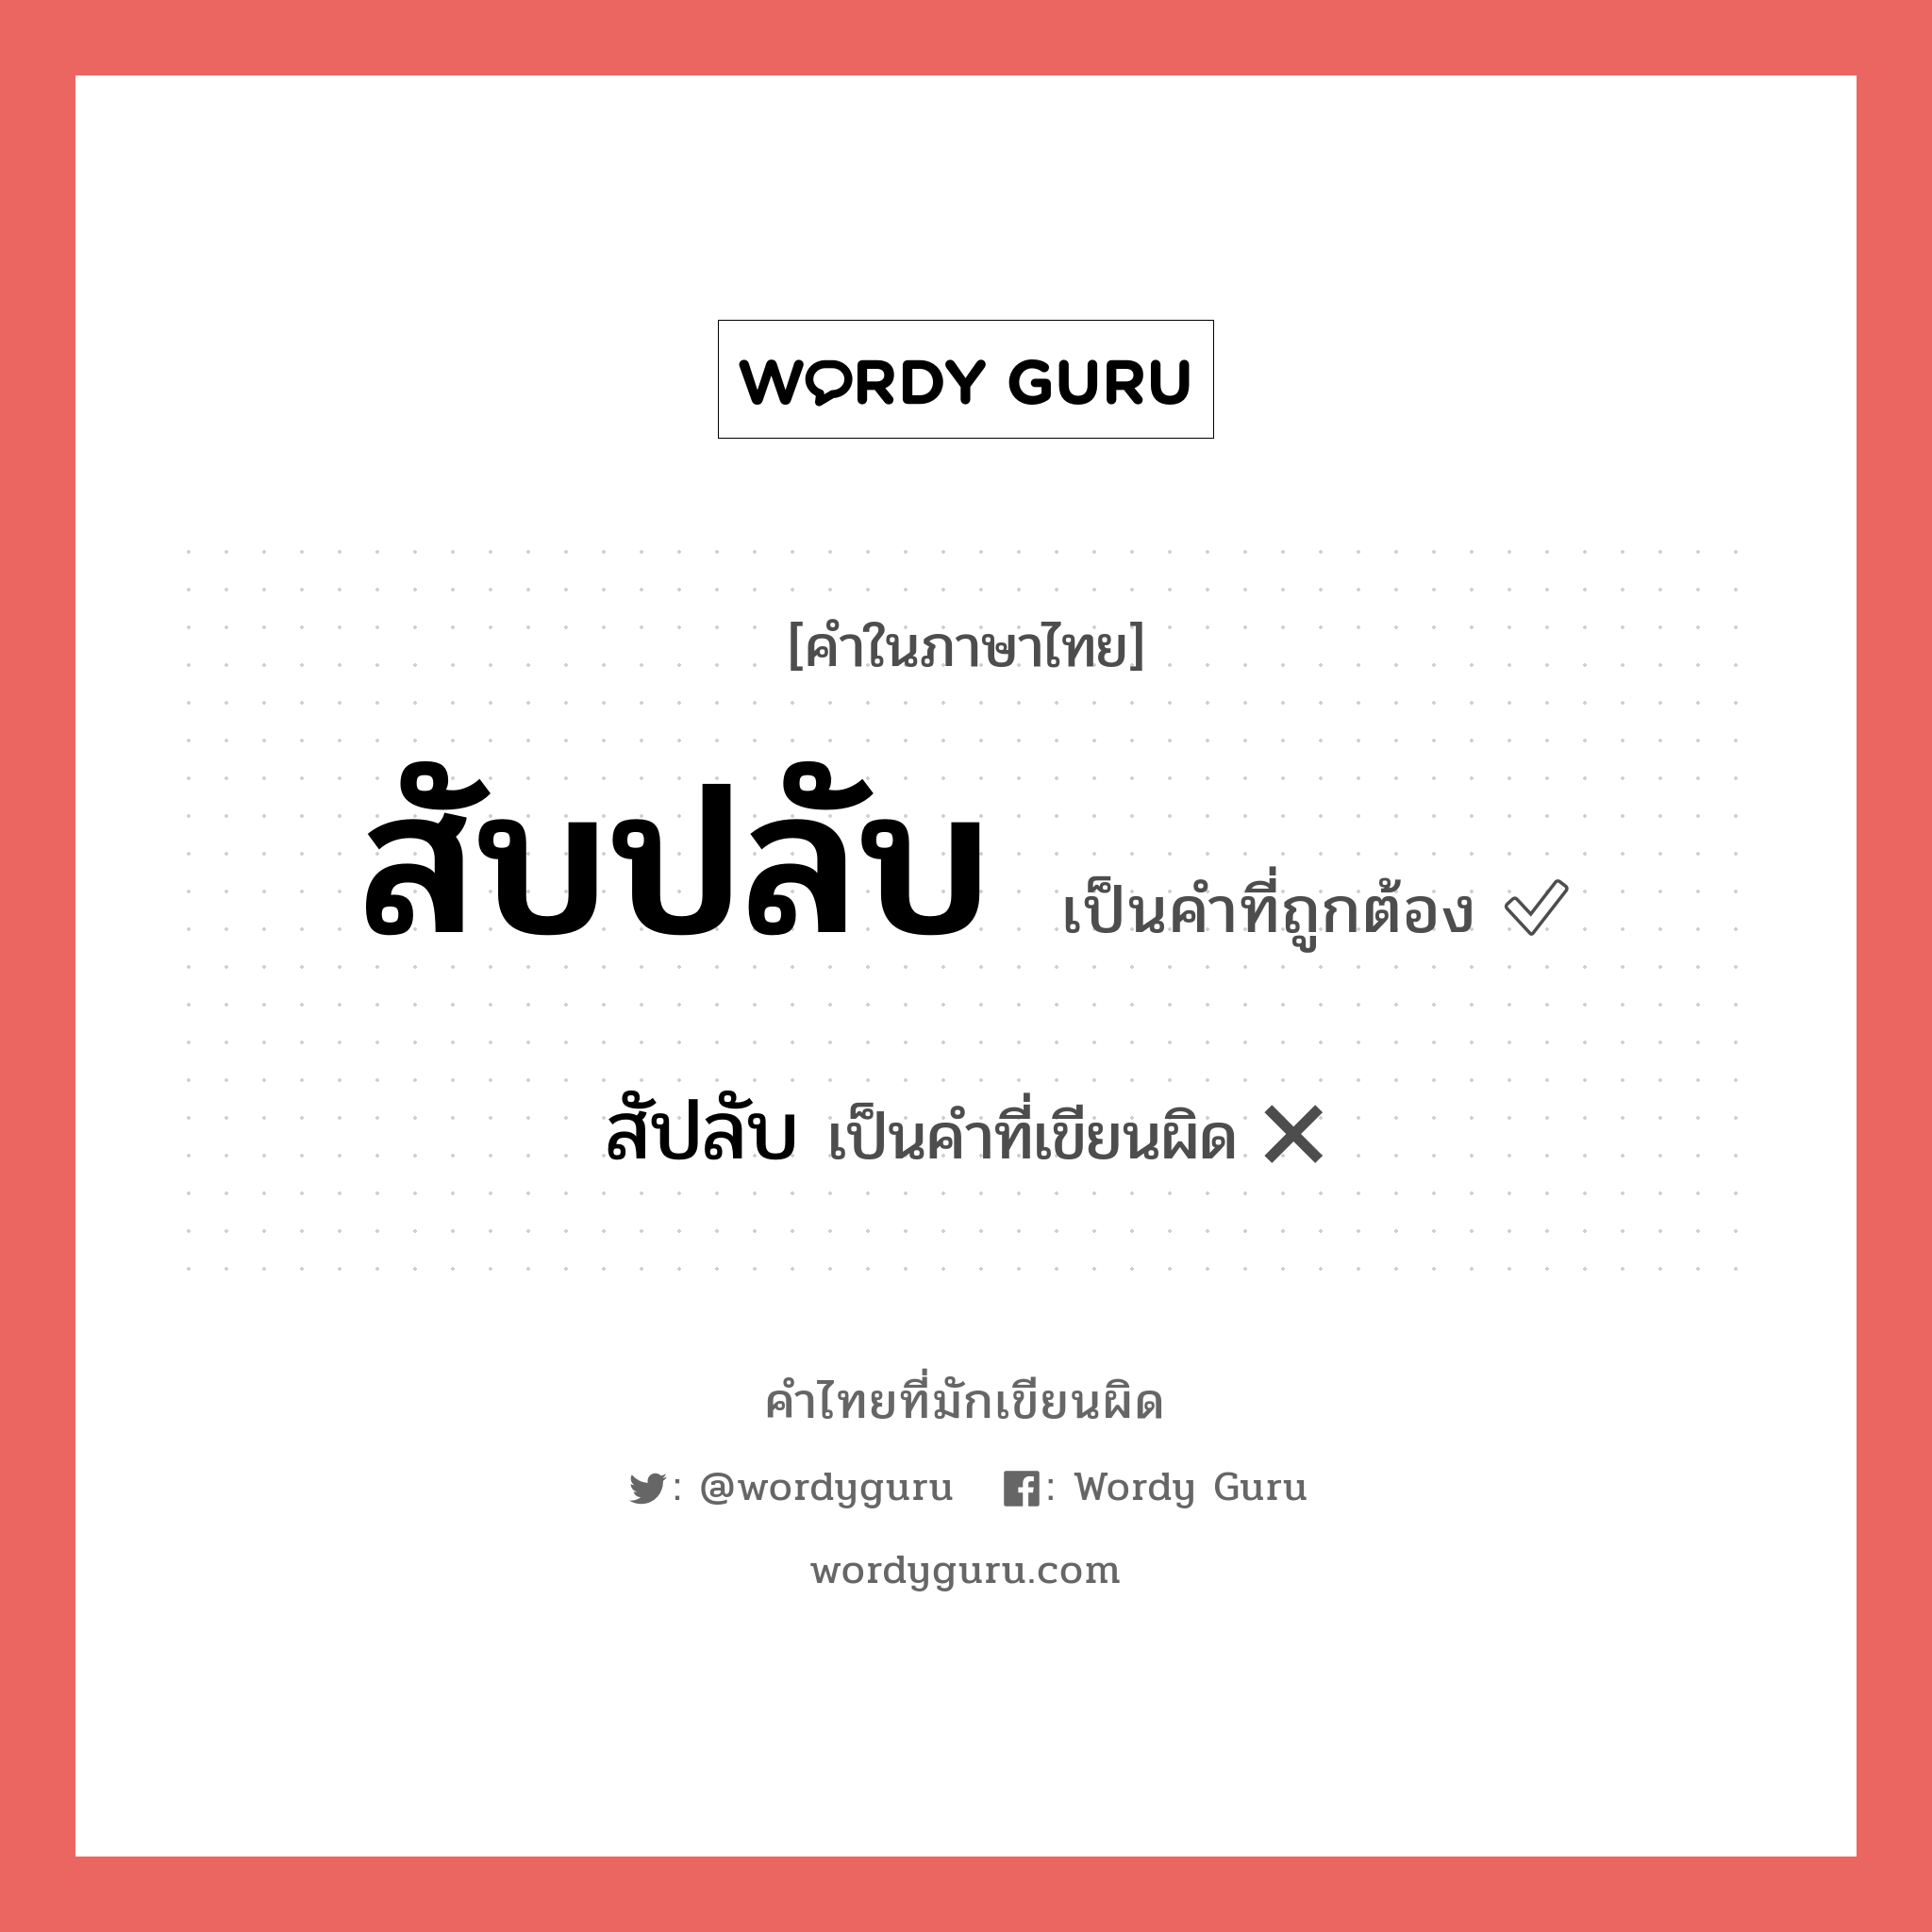 สับปลับ หรือ สัปลับ คำไหนเขียนถูก?, คำในภาษาไทยที่มักเขียนผิด สับปลับ คำที่ผิด ❌ สัปลับ